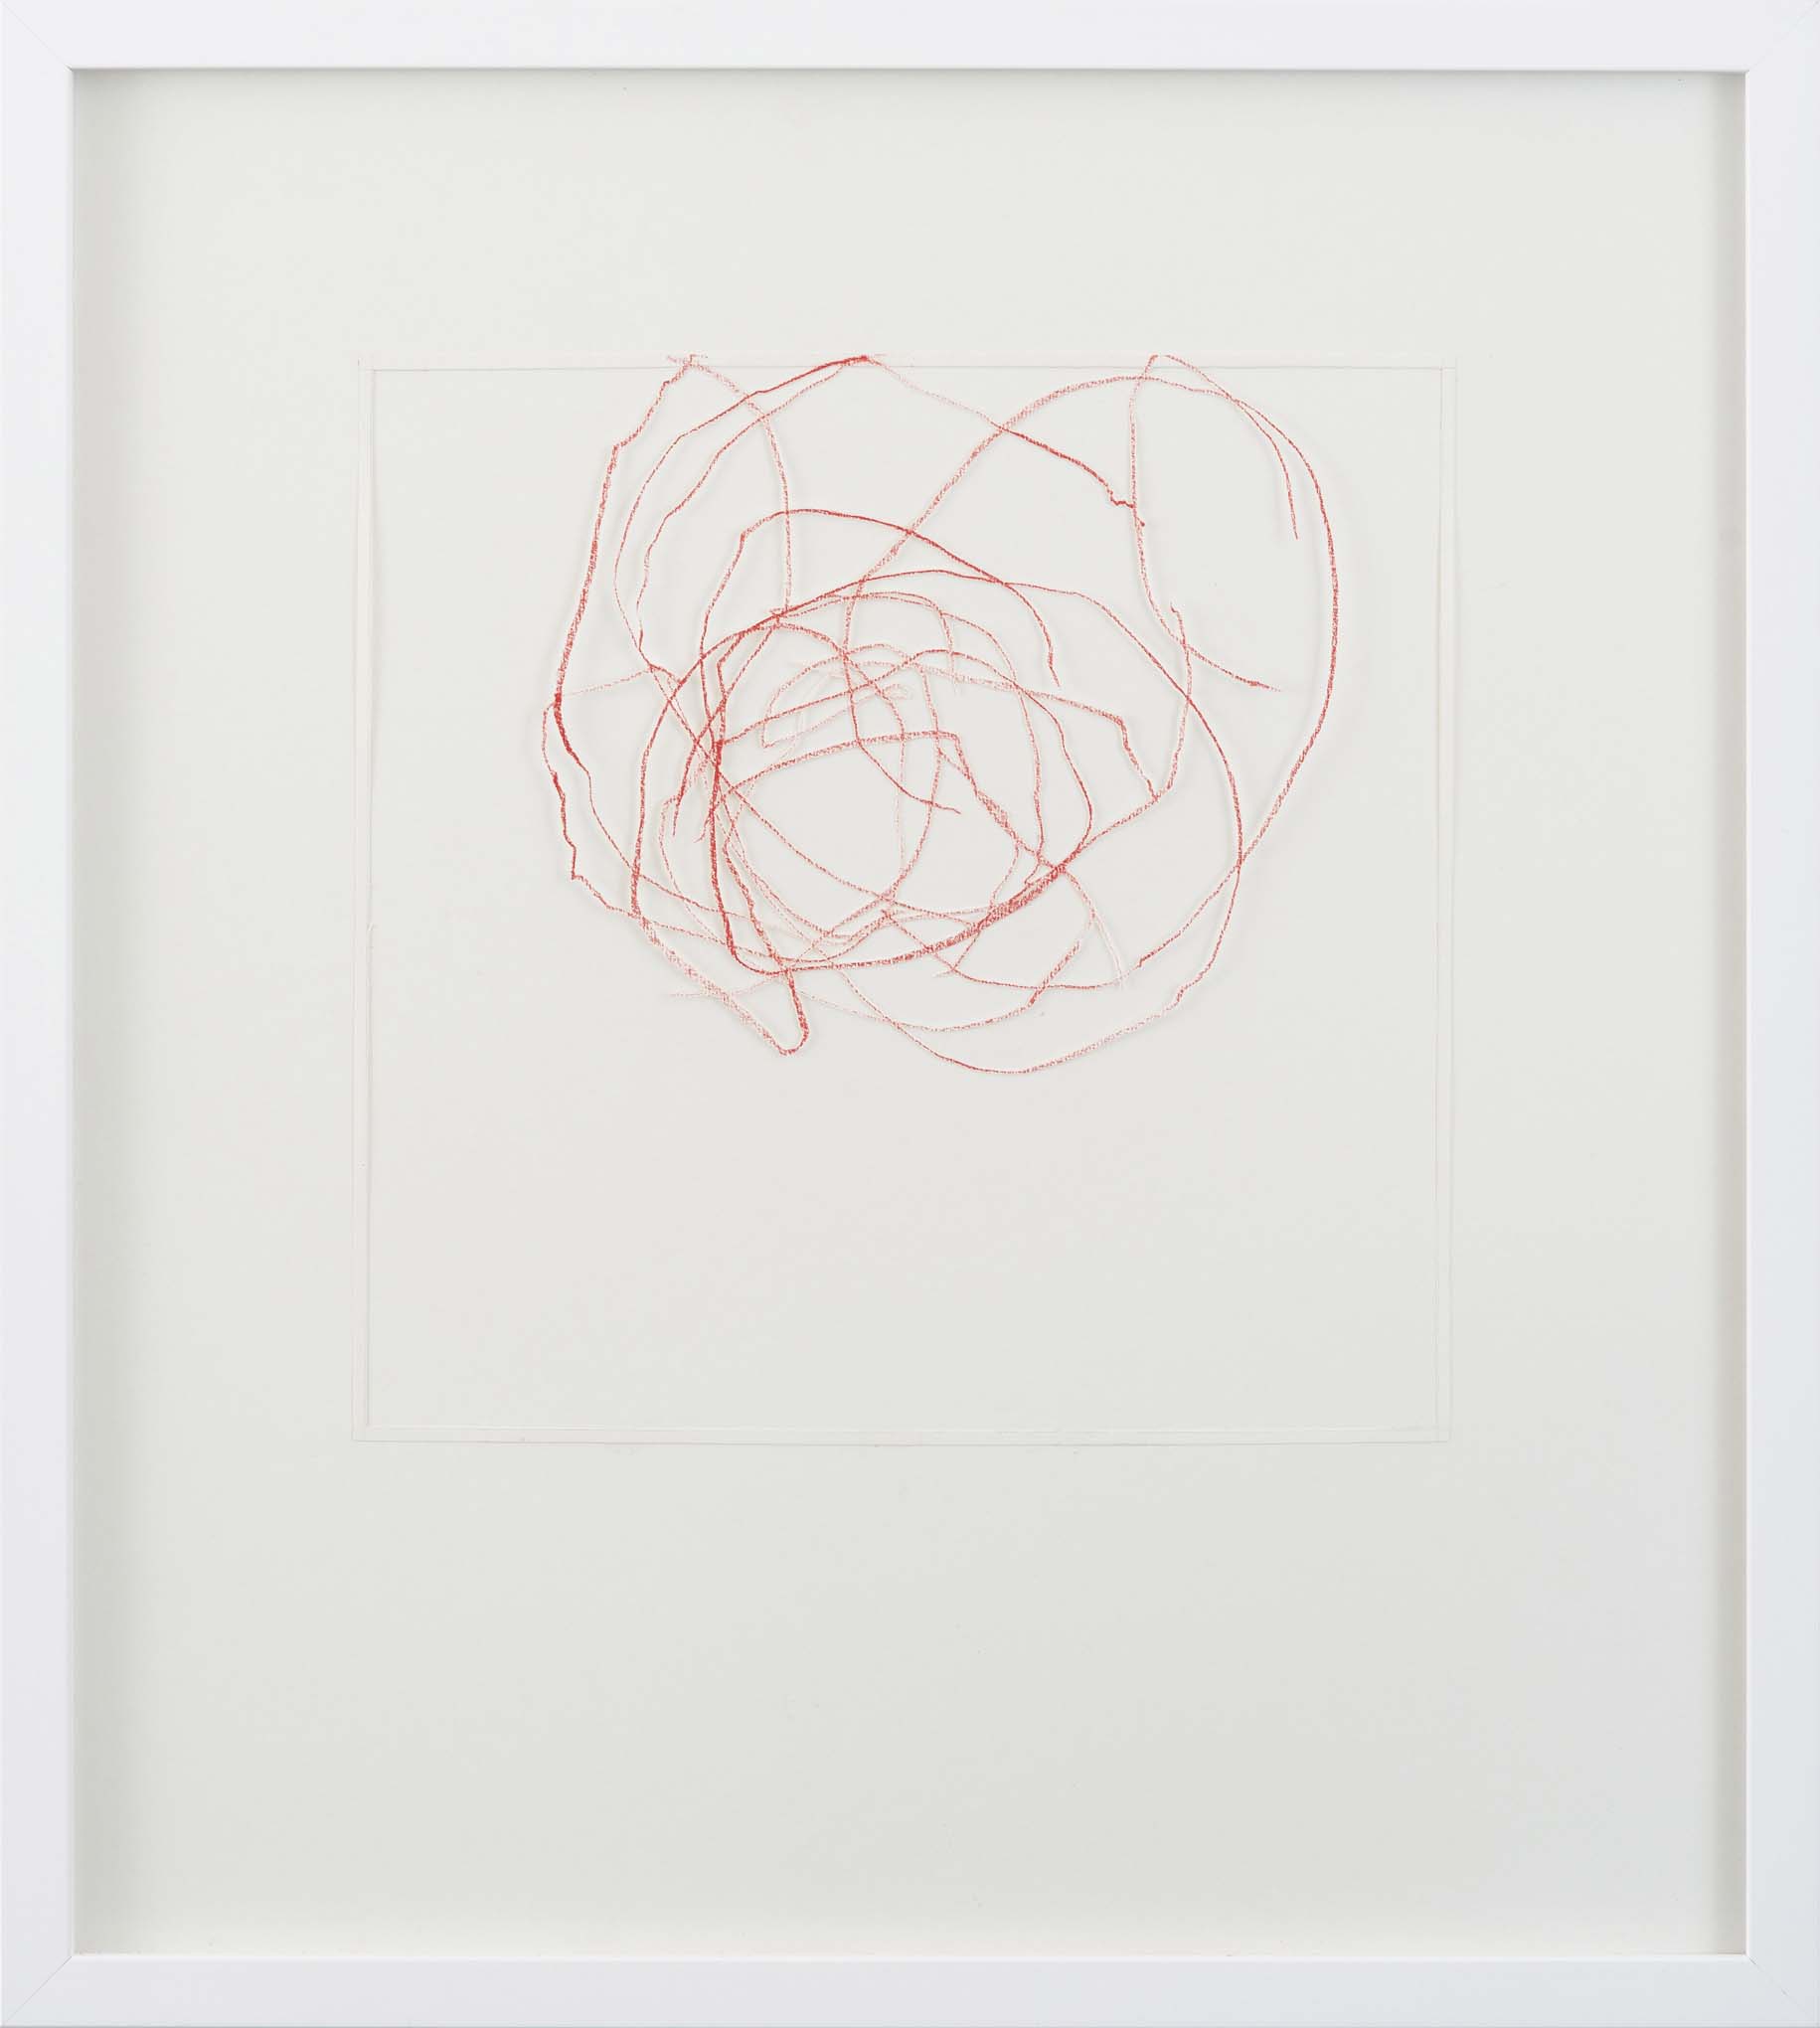 K. Hinsberg, Divis, 2013, Courtesy Galleria Marie-Laure Fleisch